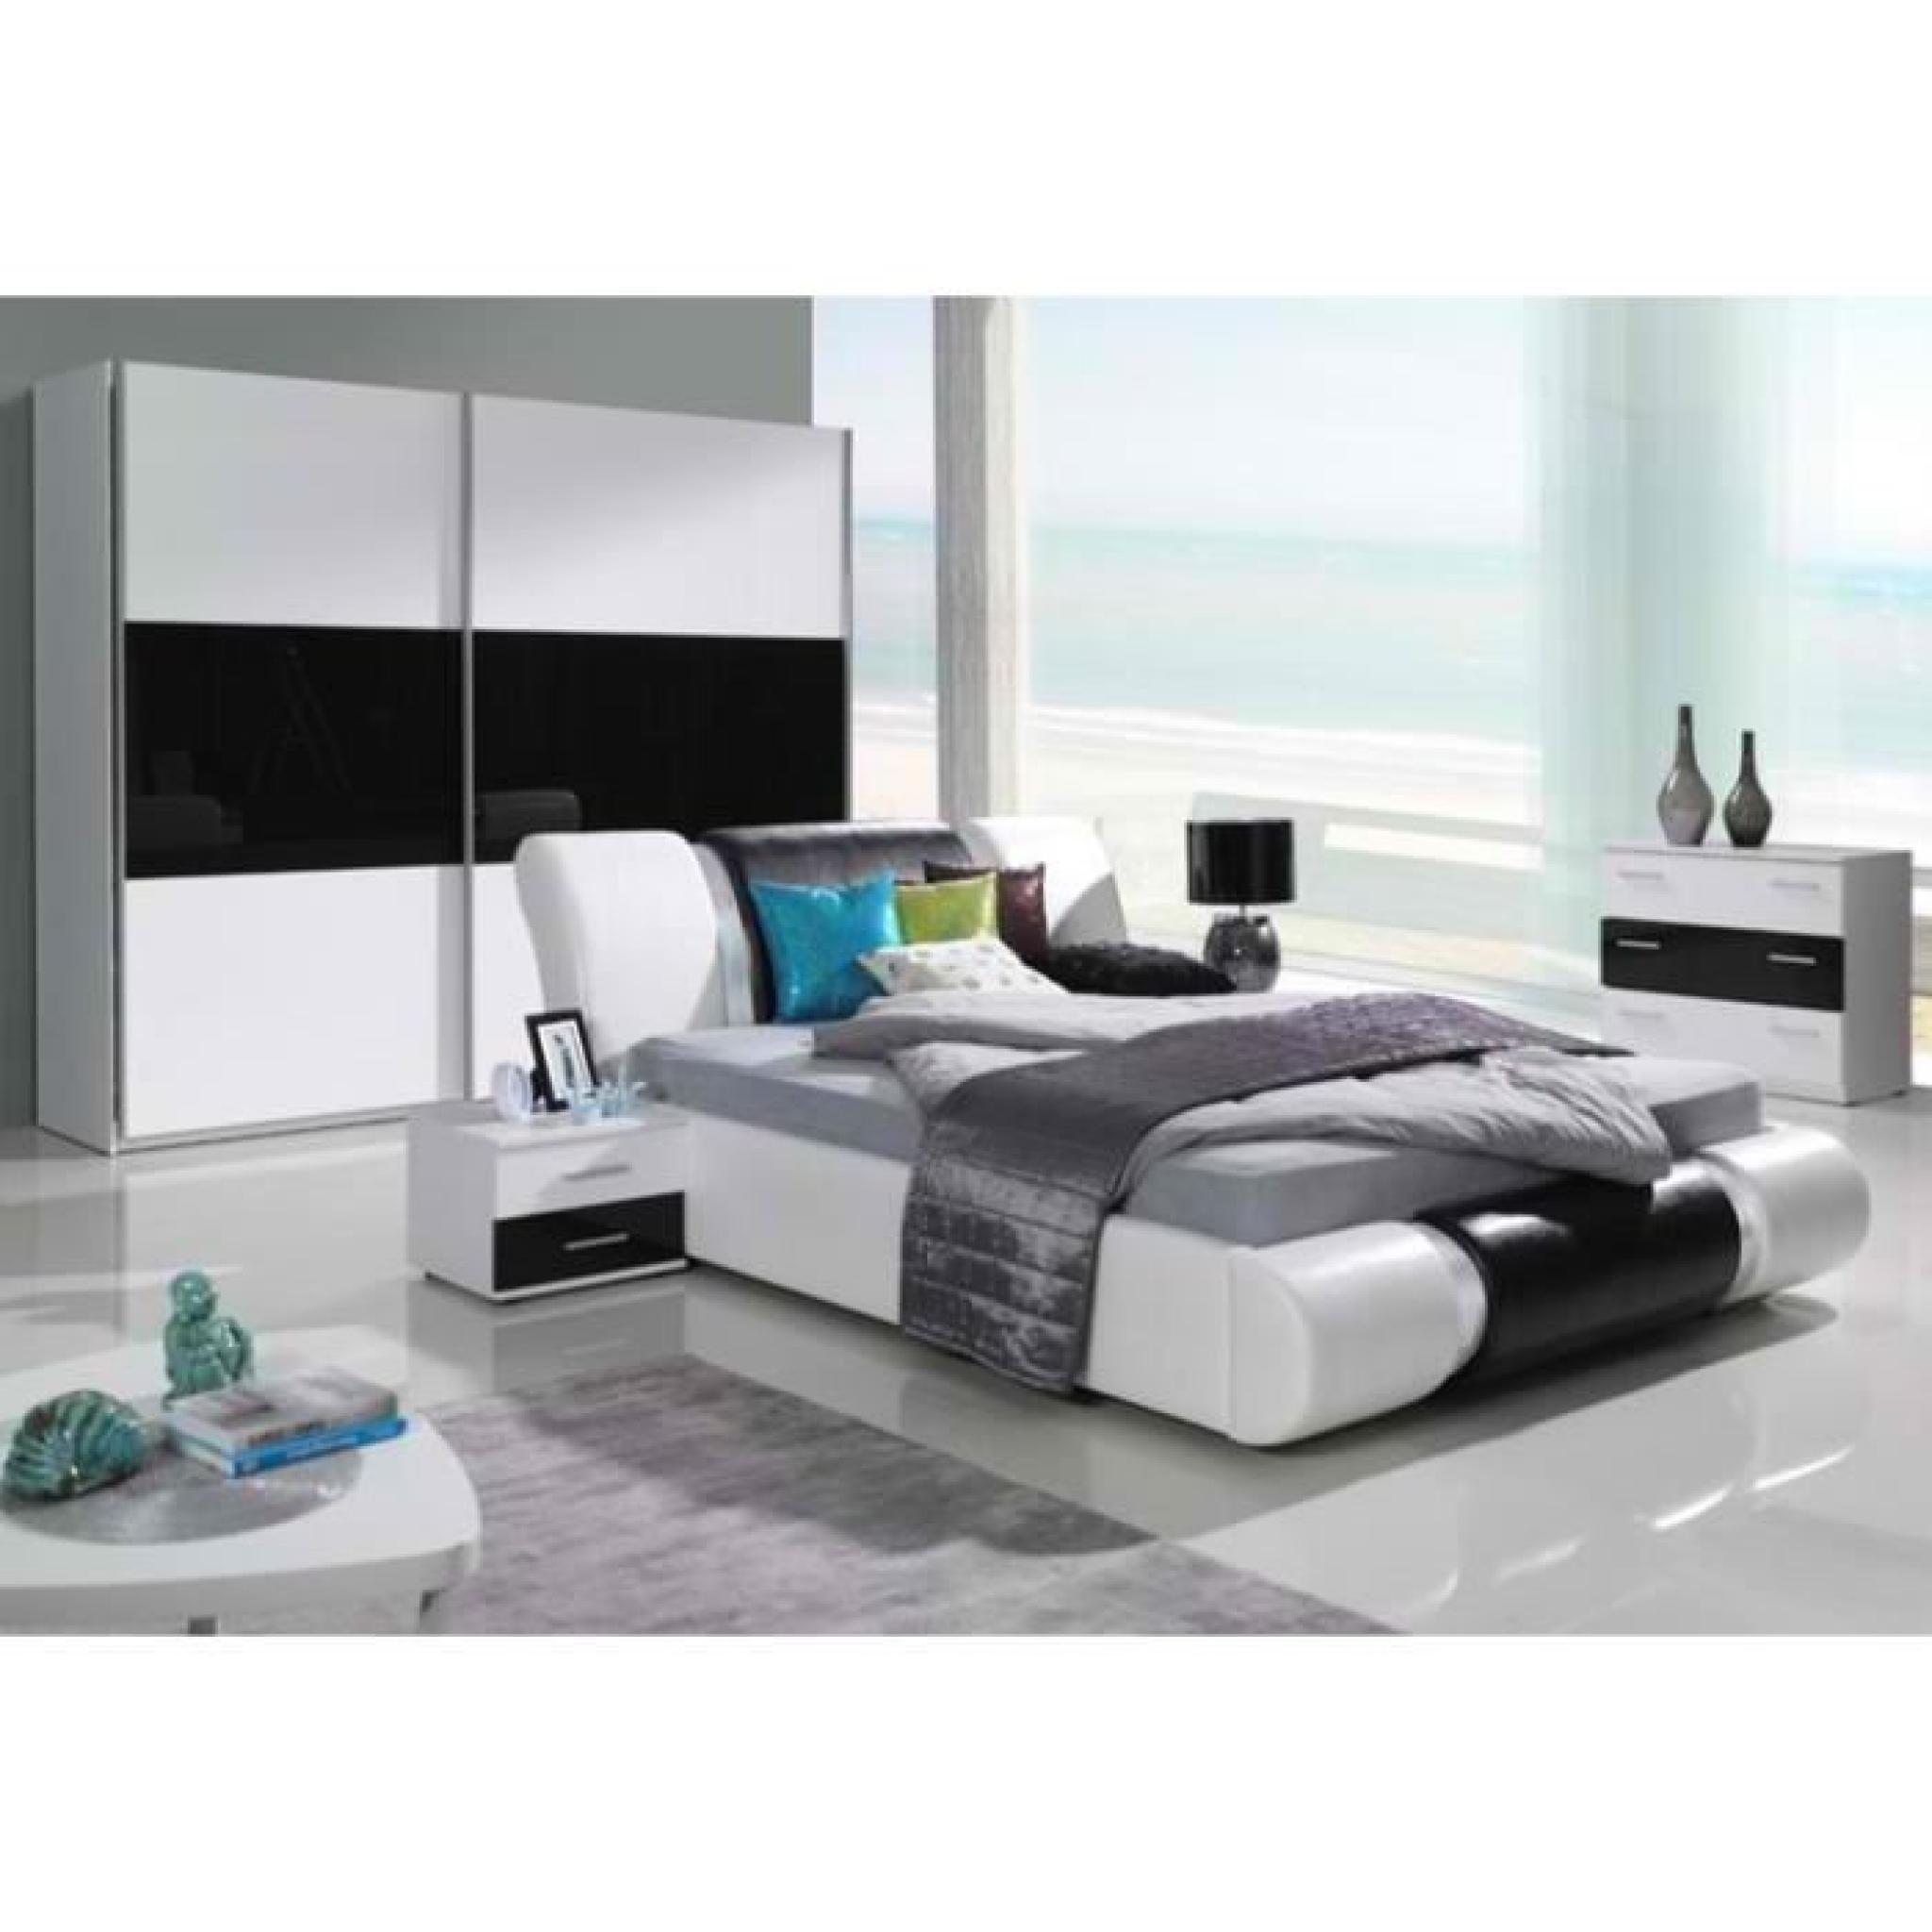 Chambre à coucher complète TEXAS design noire et blanche. Lit + armoire + commode + 2 chevets